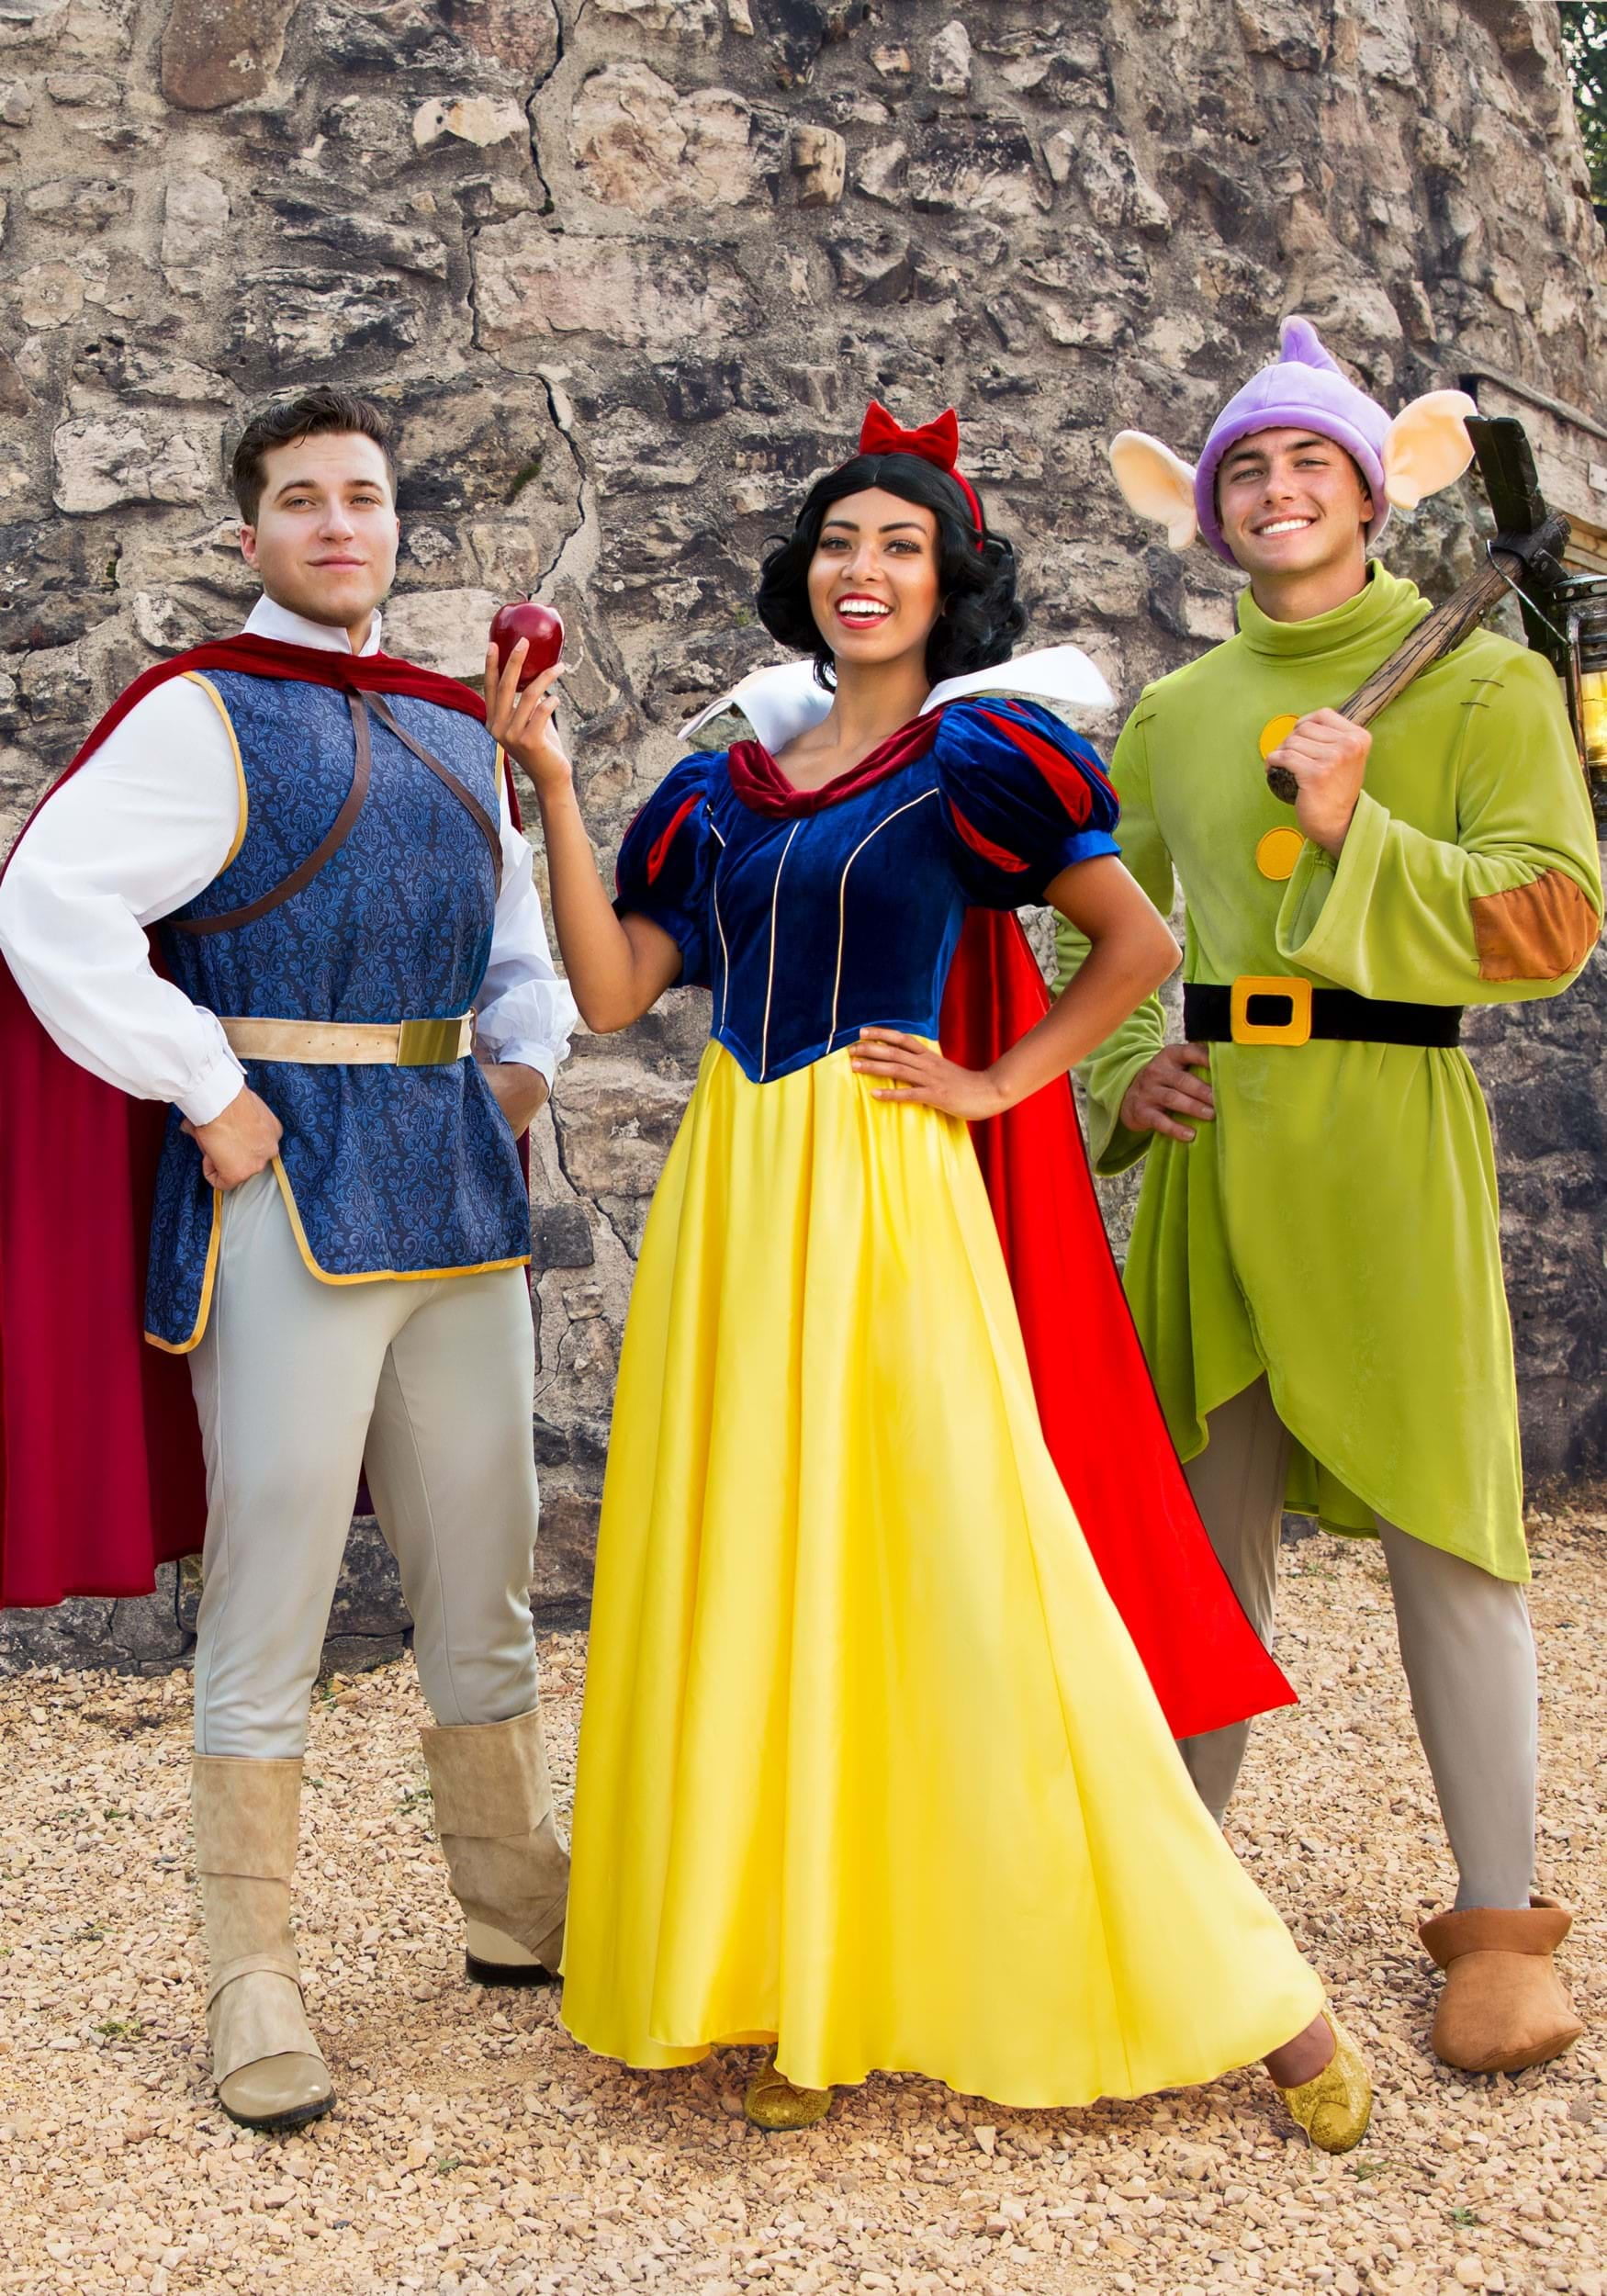 Adult Disney Snow White Dopey Costume 